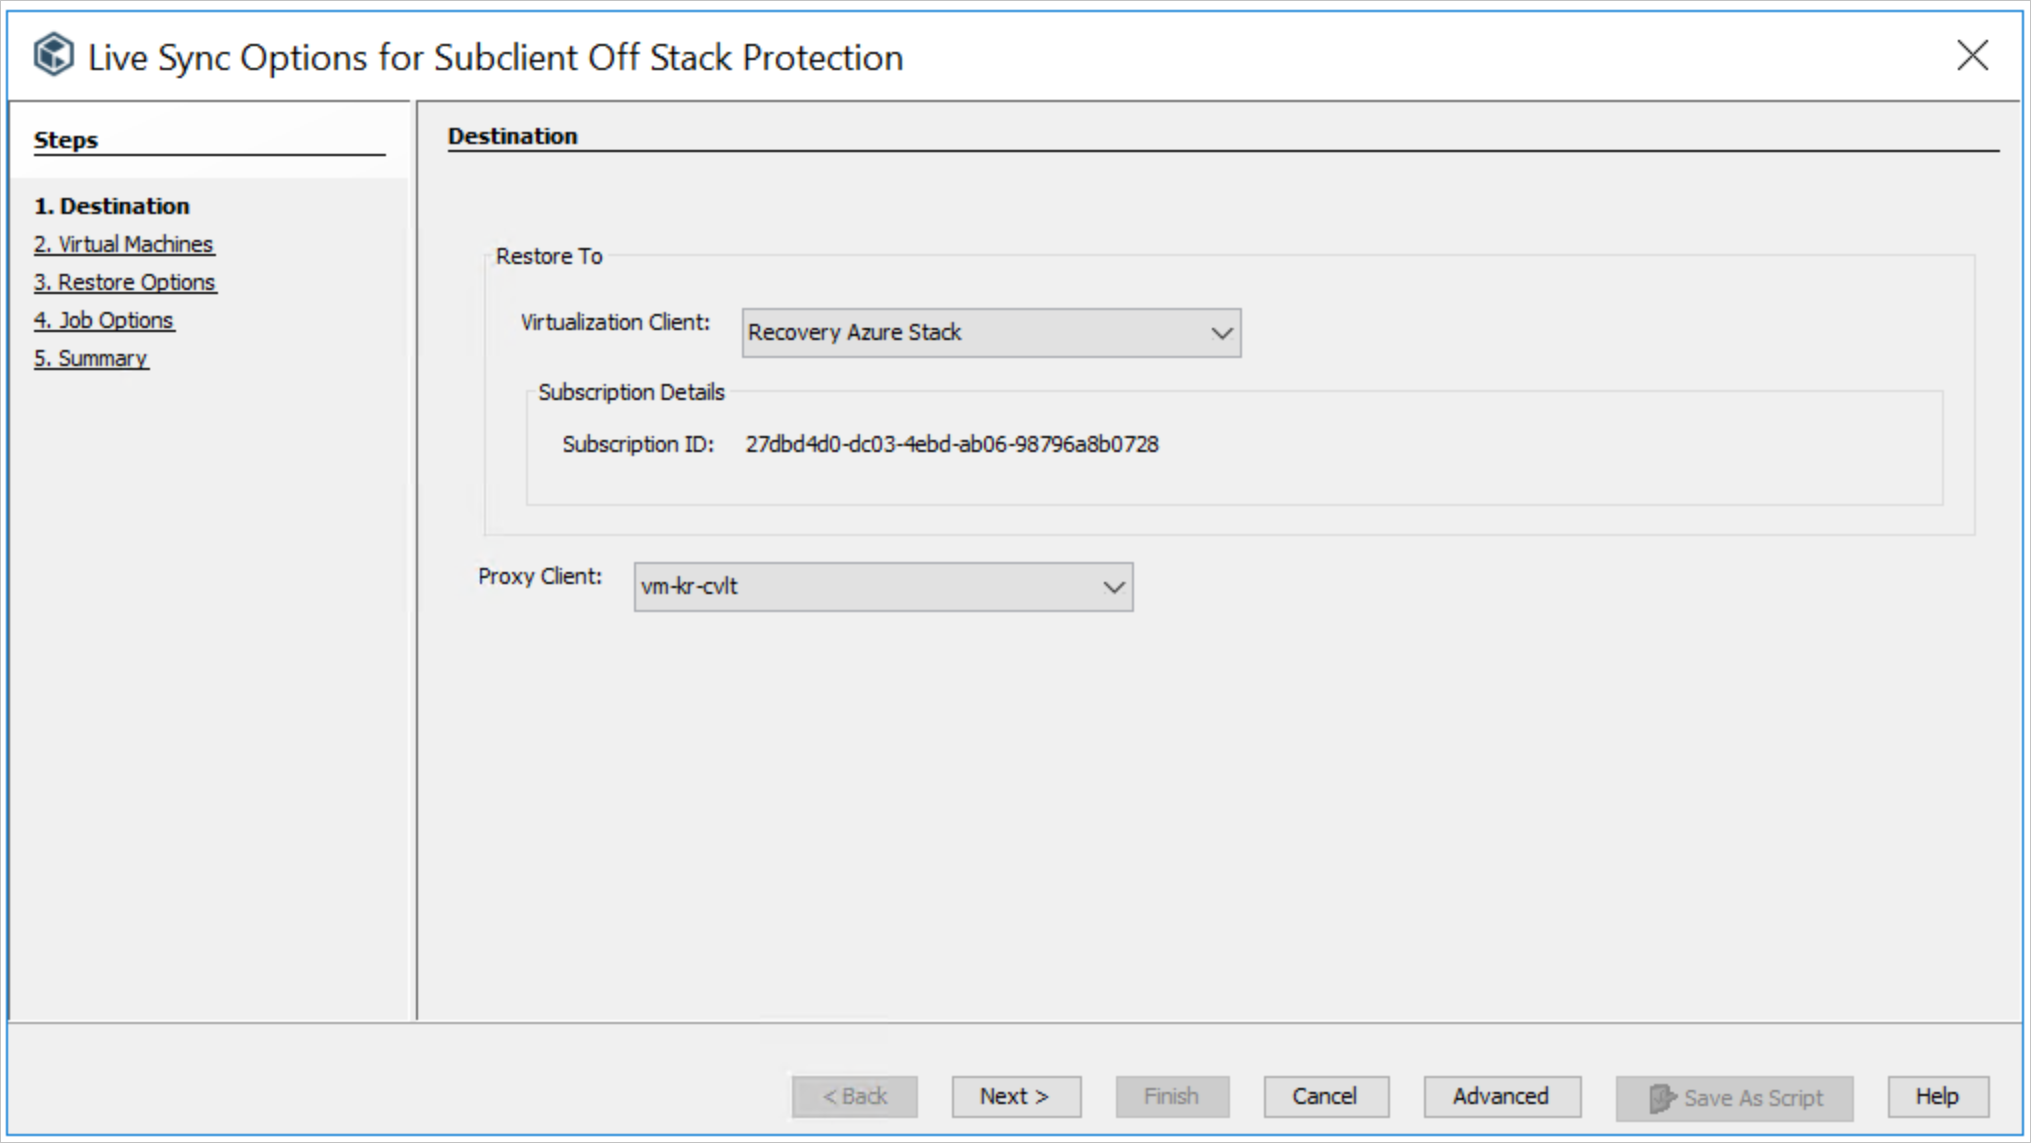 子客户端“Off Stack Protection”的“实时同步选项”向导的“目标”步骤提供用于指定虚拟化客户端和代理客户端的列表框。